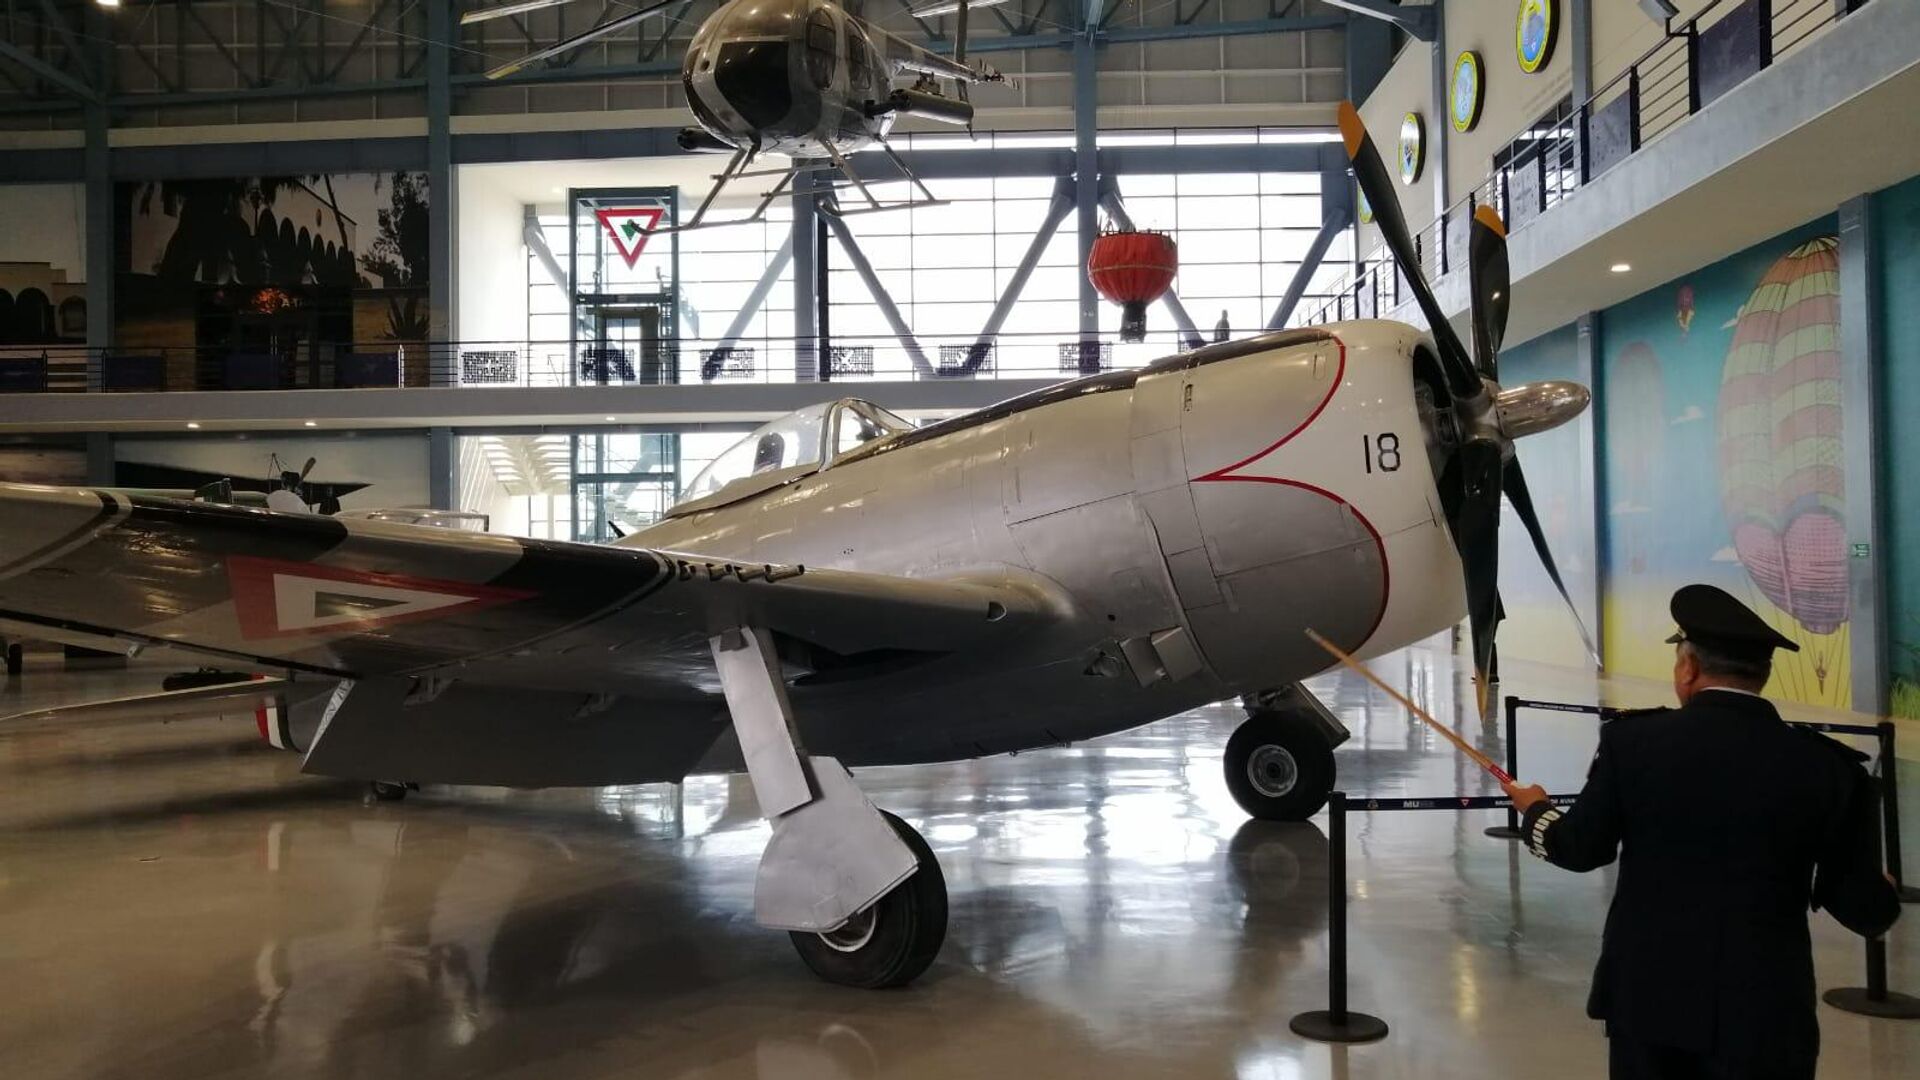 Un P47-D Thunderbolt original, propio de la época del Escuadrón 201. - Sputnik Mundo, 1920, 09.05.2022